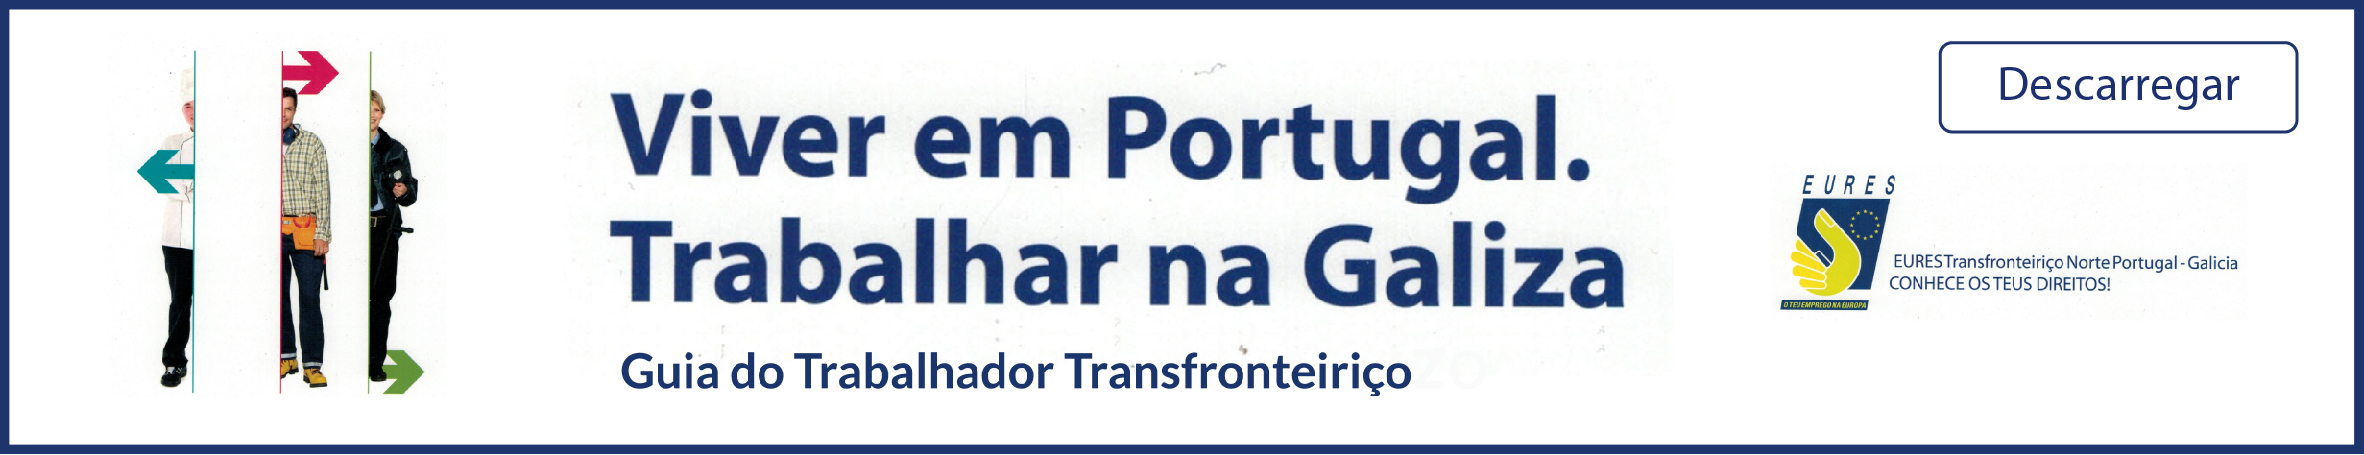 VIVER em PORTUGAL e TRABALHAR na GALIZA: Guia do Trabalhador Transfronteiriço 